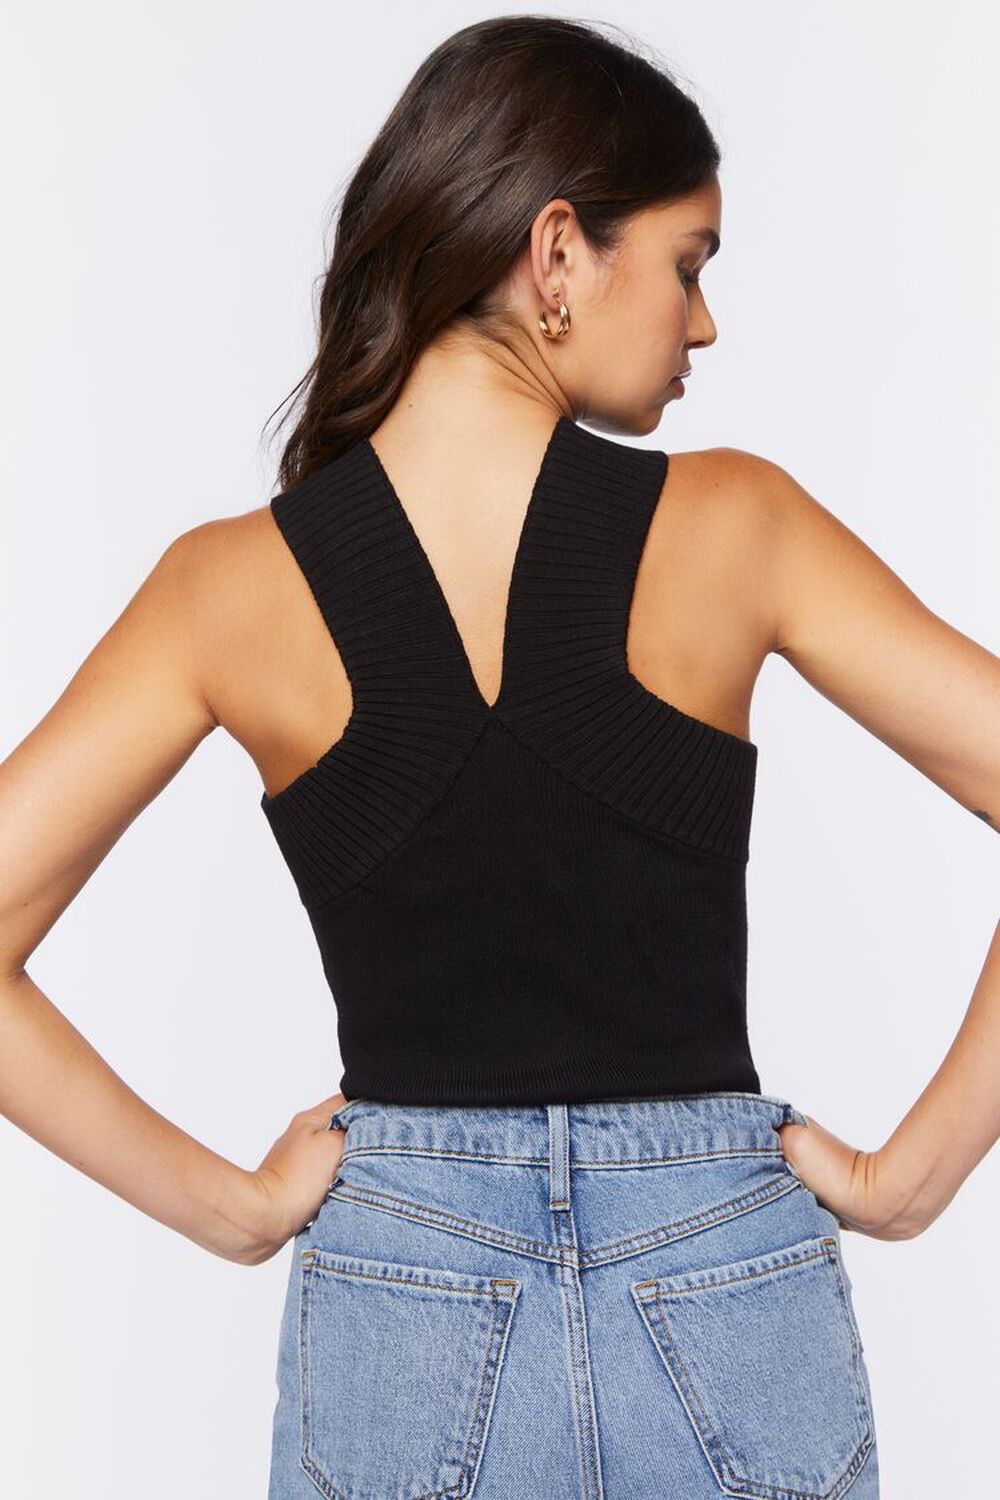 Sweater-Knit Sleeveless Bodysuit, image 3